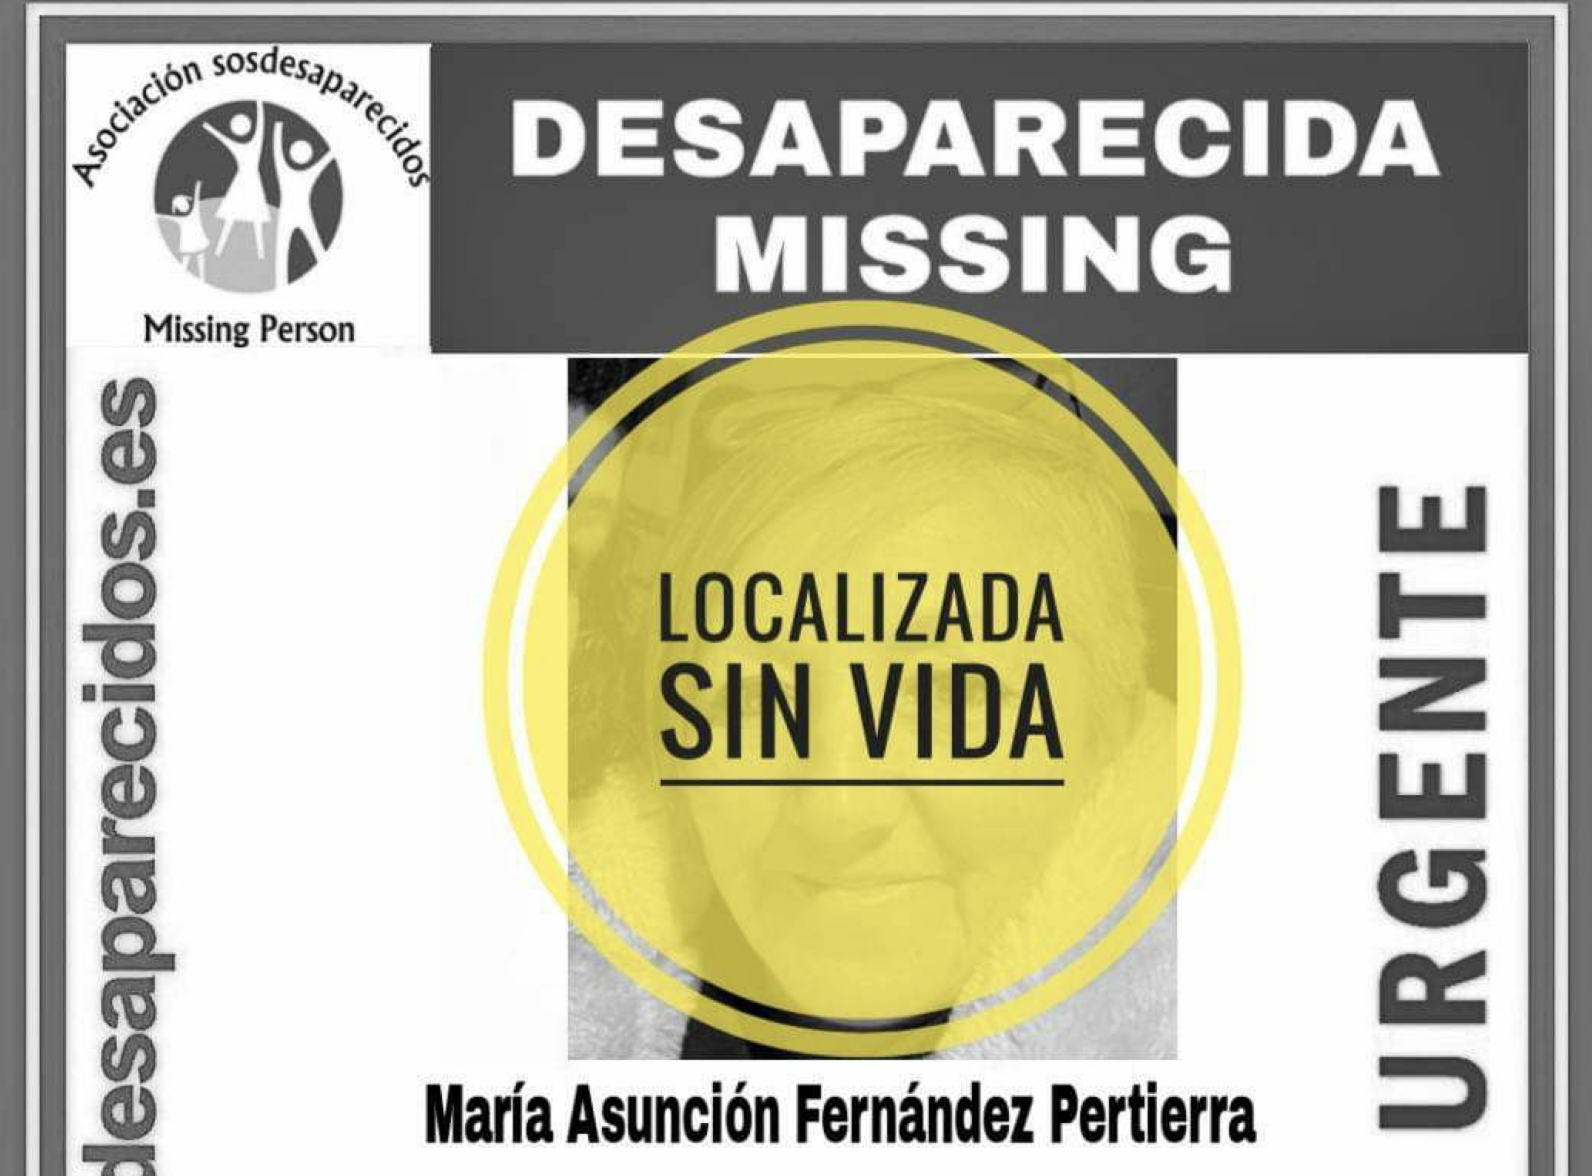 El cuerpo sin vida de María Asunción Fernández ha sido encontrado tras varios días desaparecida.